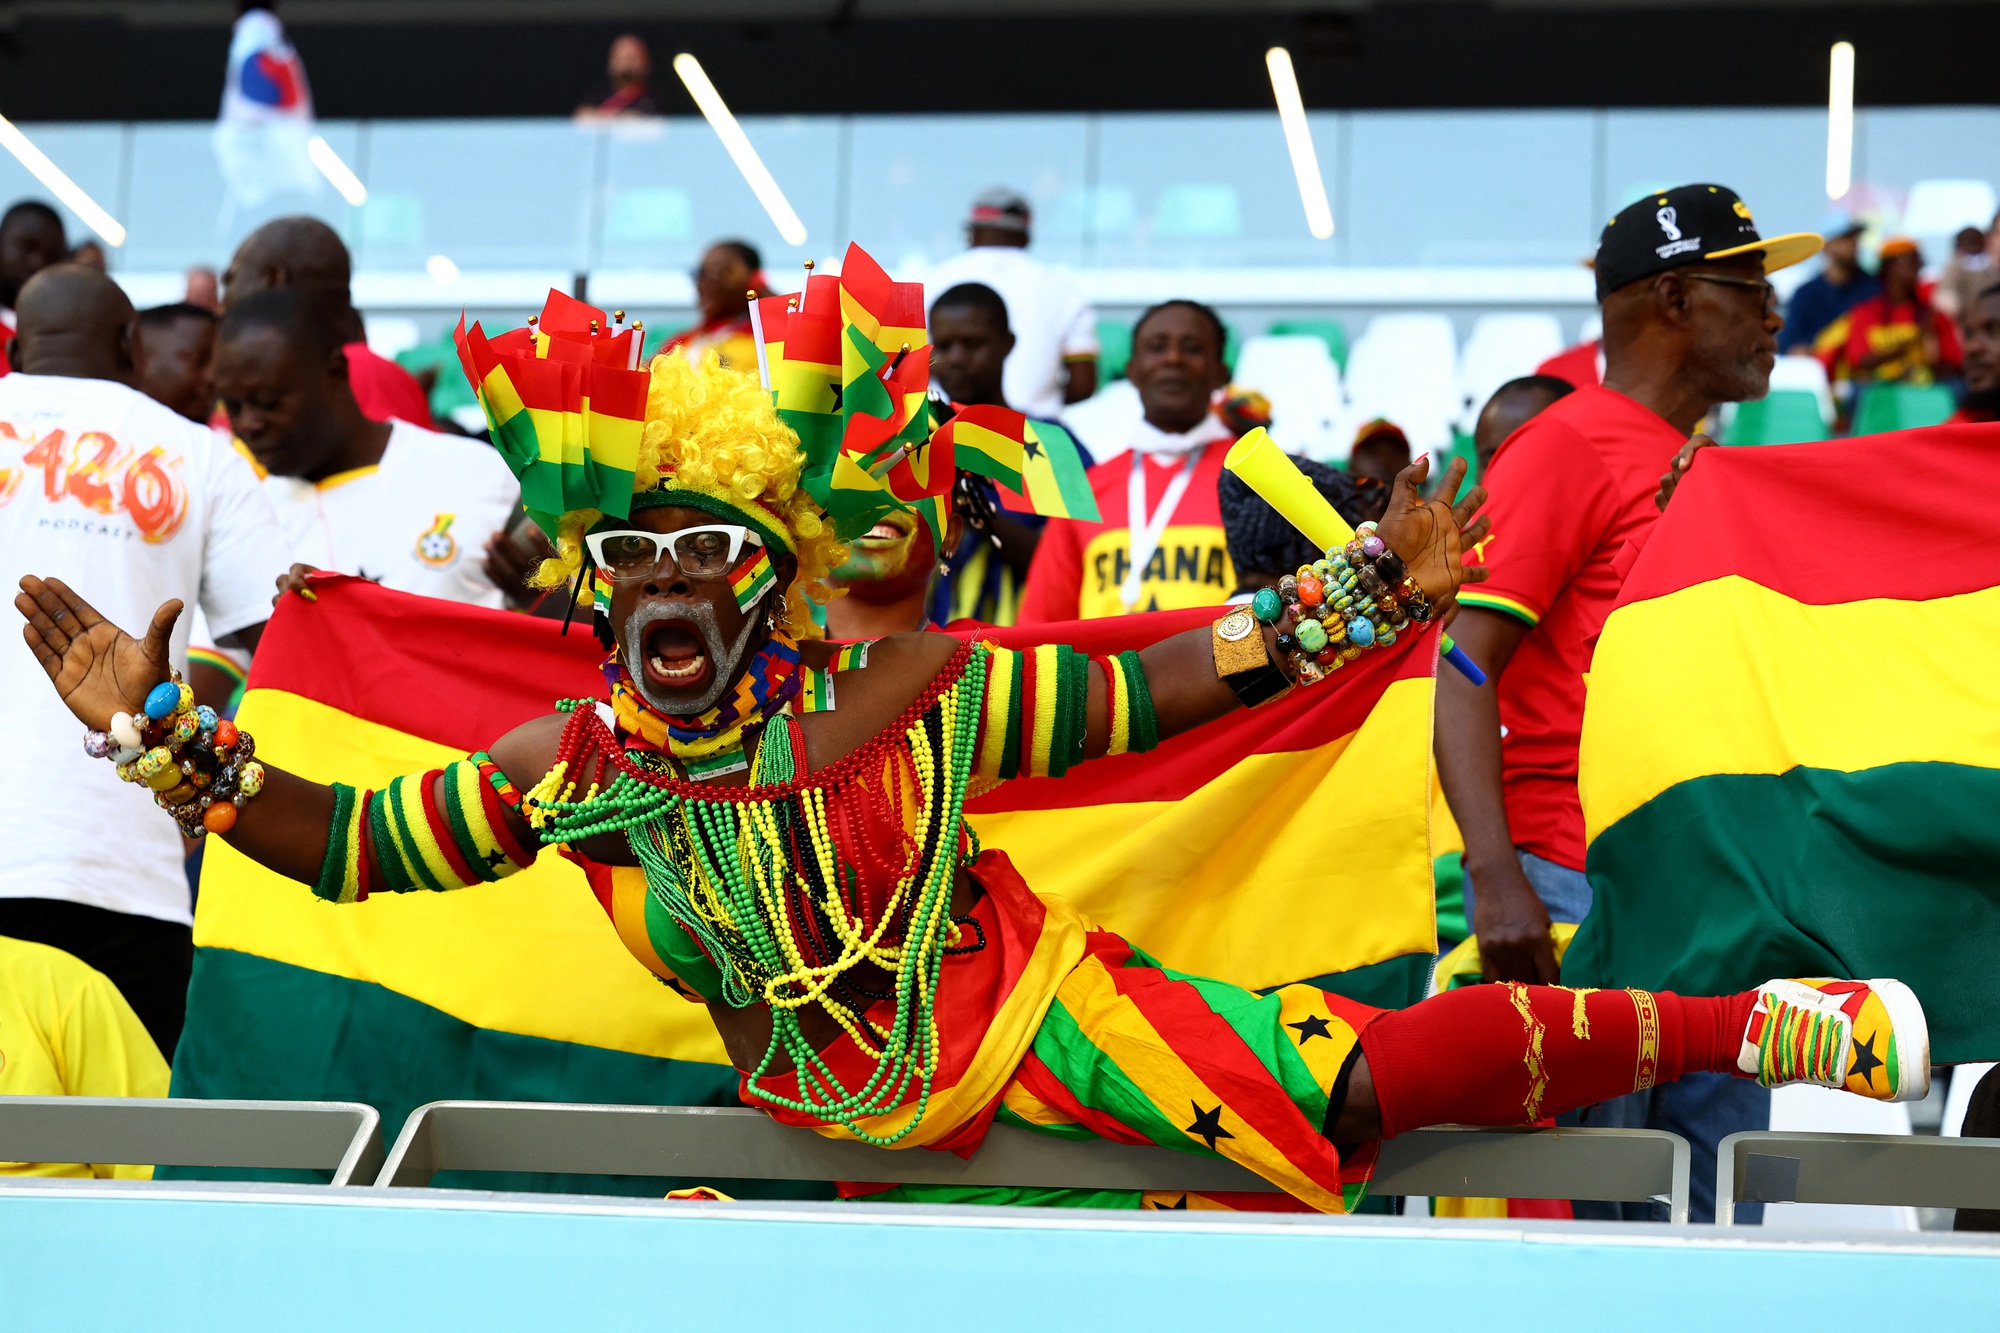 Thua Ghana 2-3, Hàn Quốc cạn hy vọng ở World Cup Qatar - Ảnh 4.